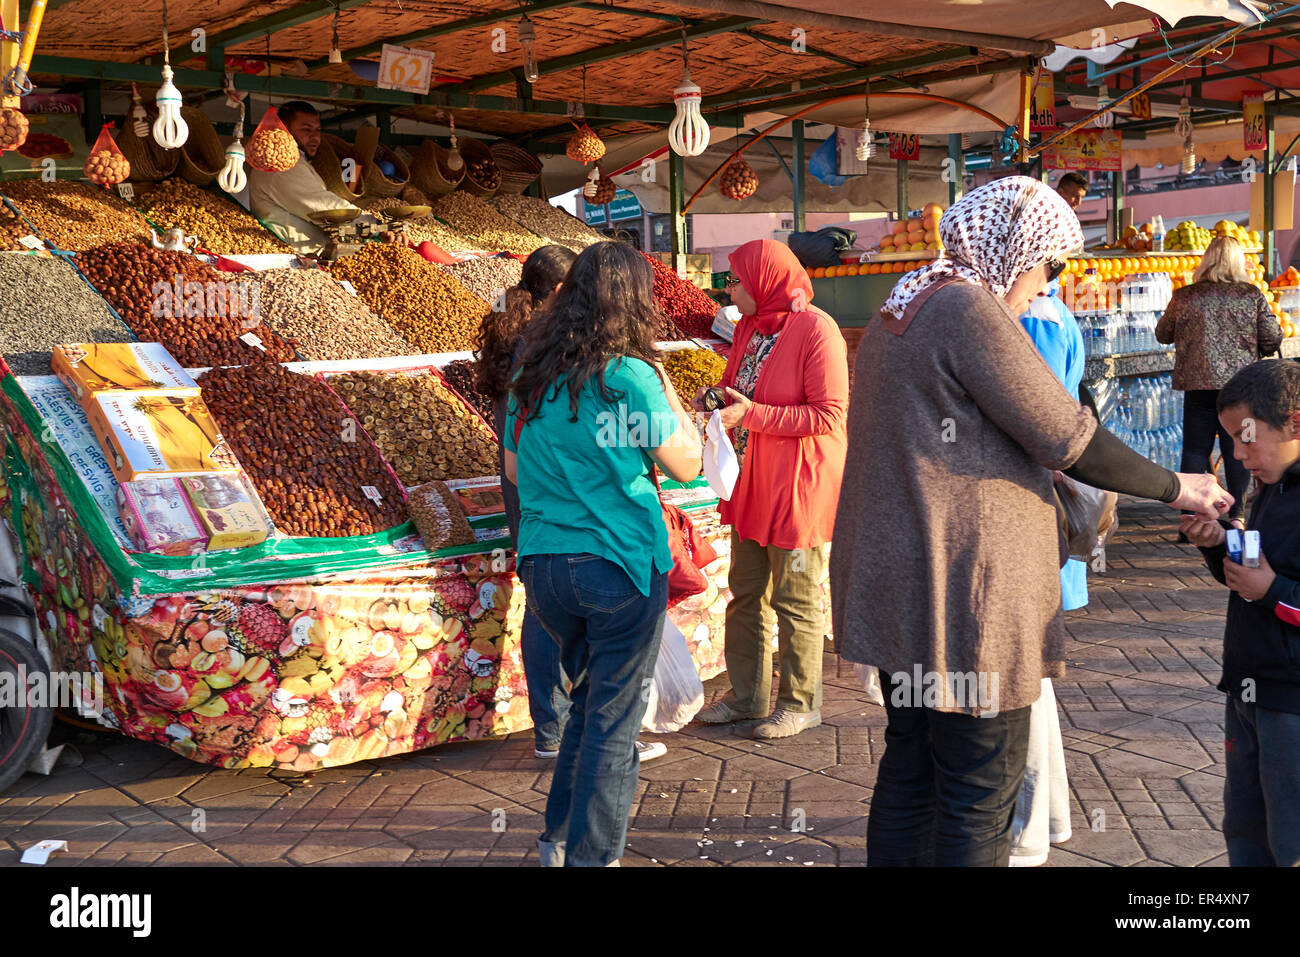 Pressione di stallo di arachidi al Djeema el fnaa' - La frenetica Marrakech piazza del mercato Foto Stock